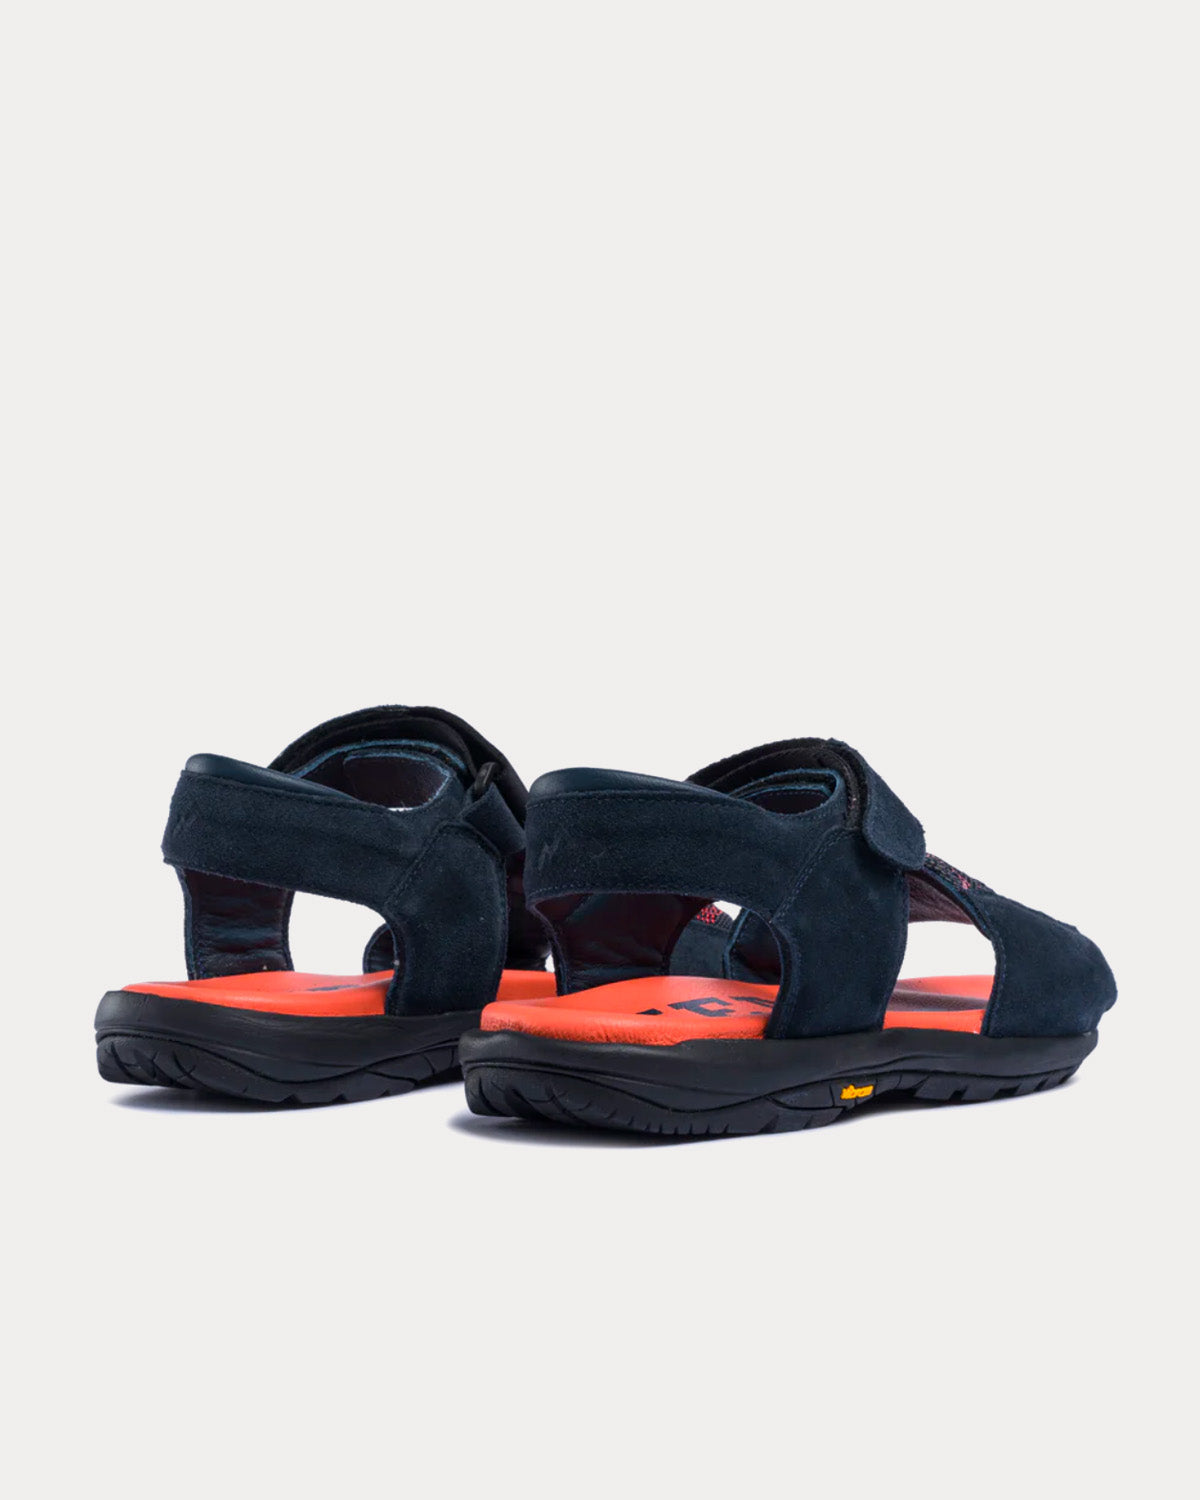 Diemme x Byborre - Dune Navy Sandals